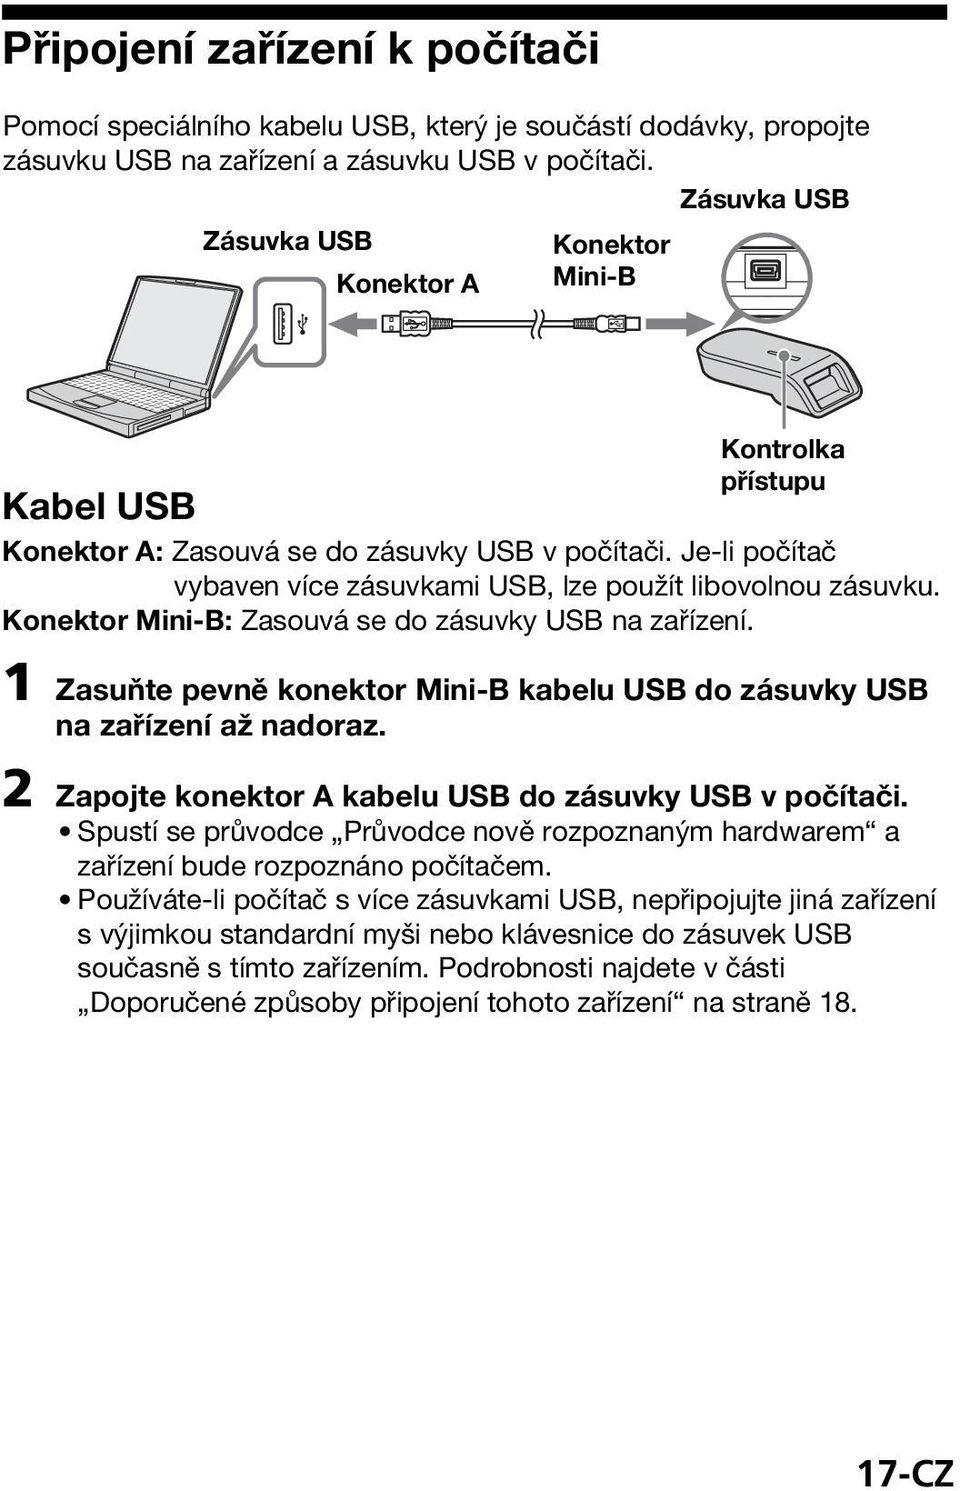 Je-li počítač vybaven více zásuvkami USB, lze použít libovolnou zásuvku. Konektor Mini-B: Zasouvá se do zásuvky USB na zařízení.